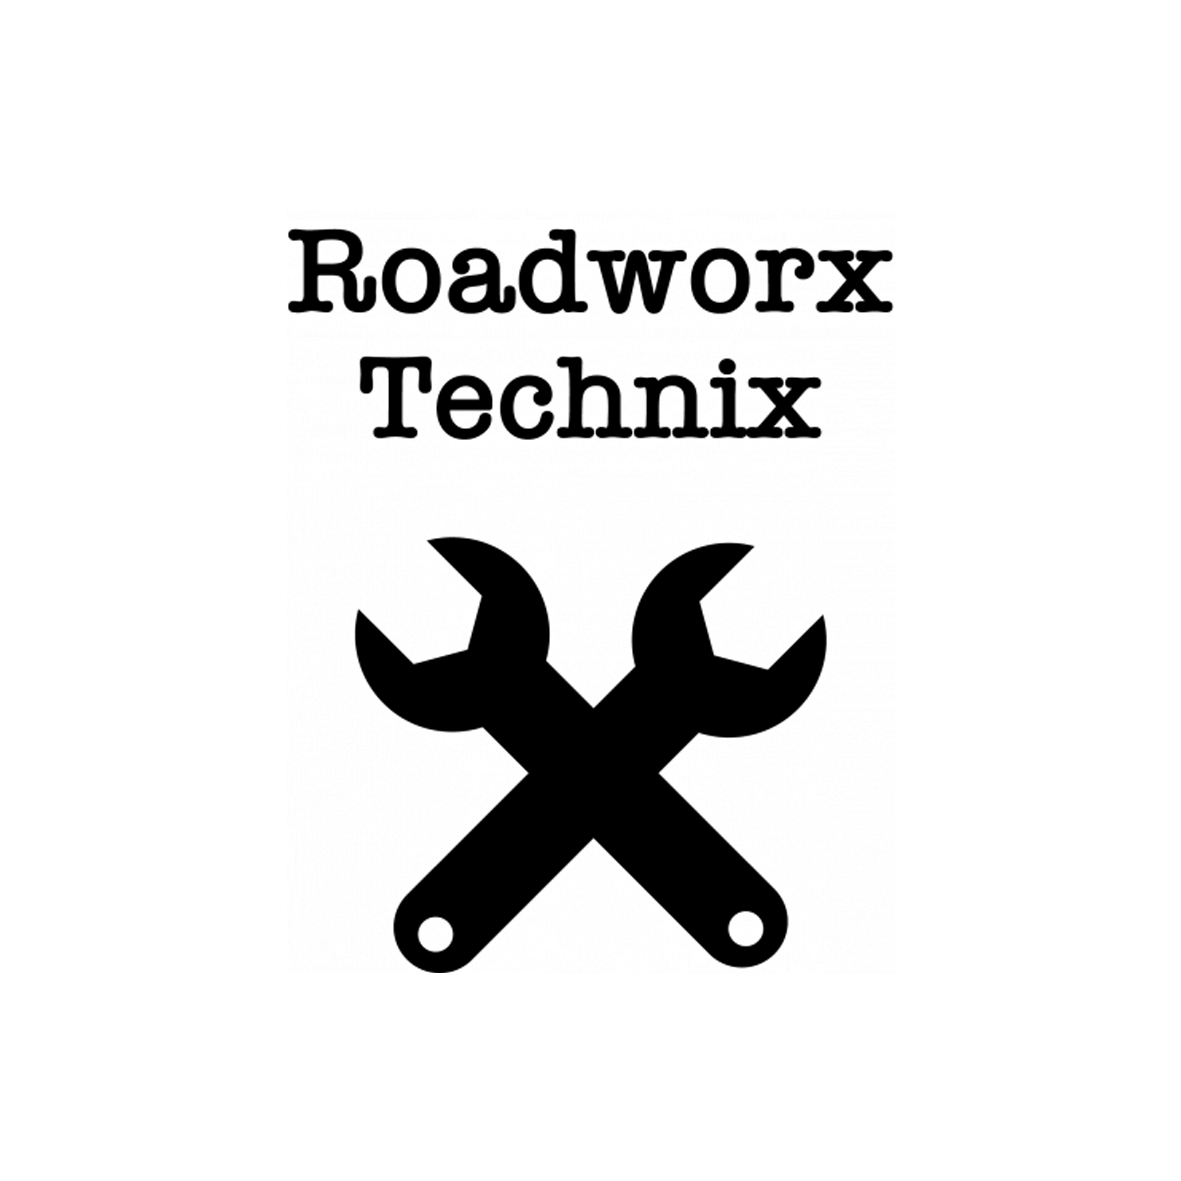 RoadWorx Technics